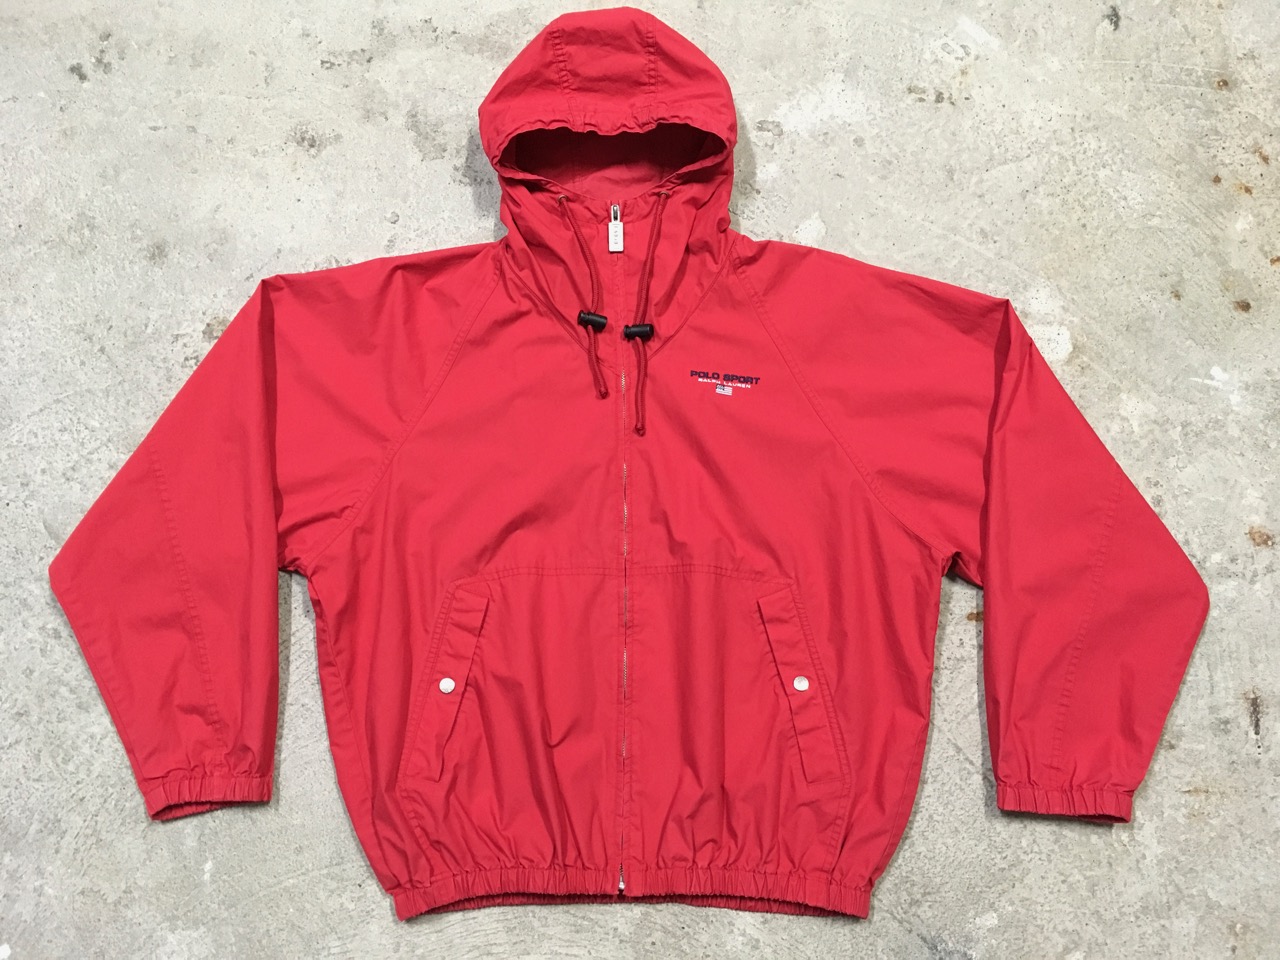 Red Windbreaker Jacket - Jackets